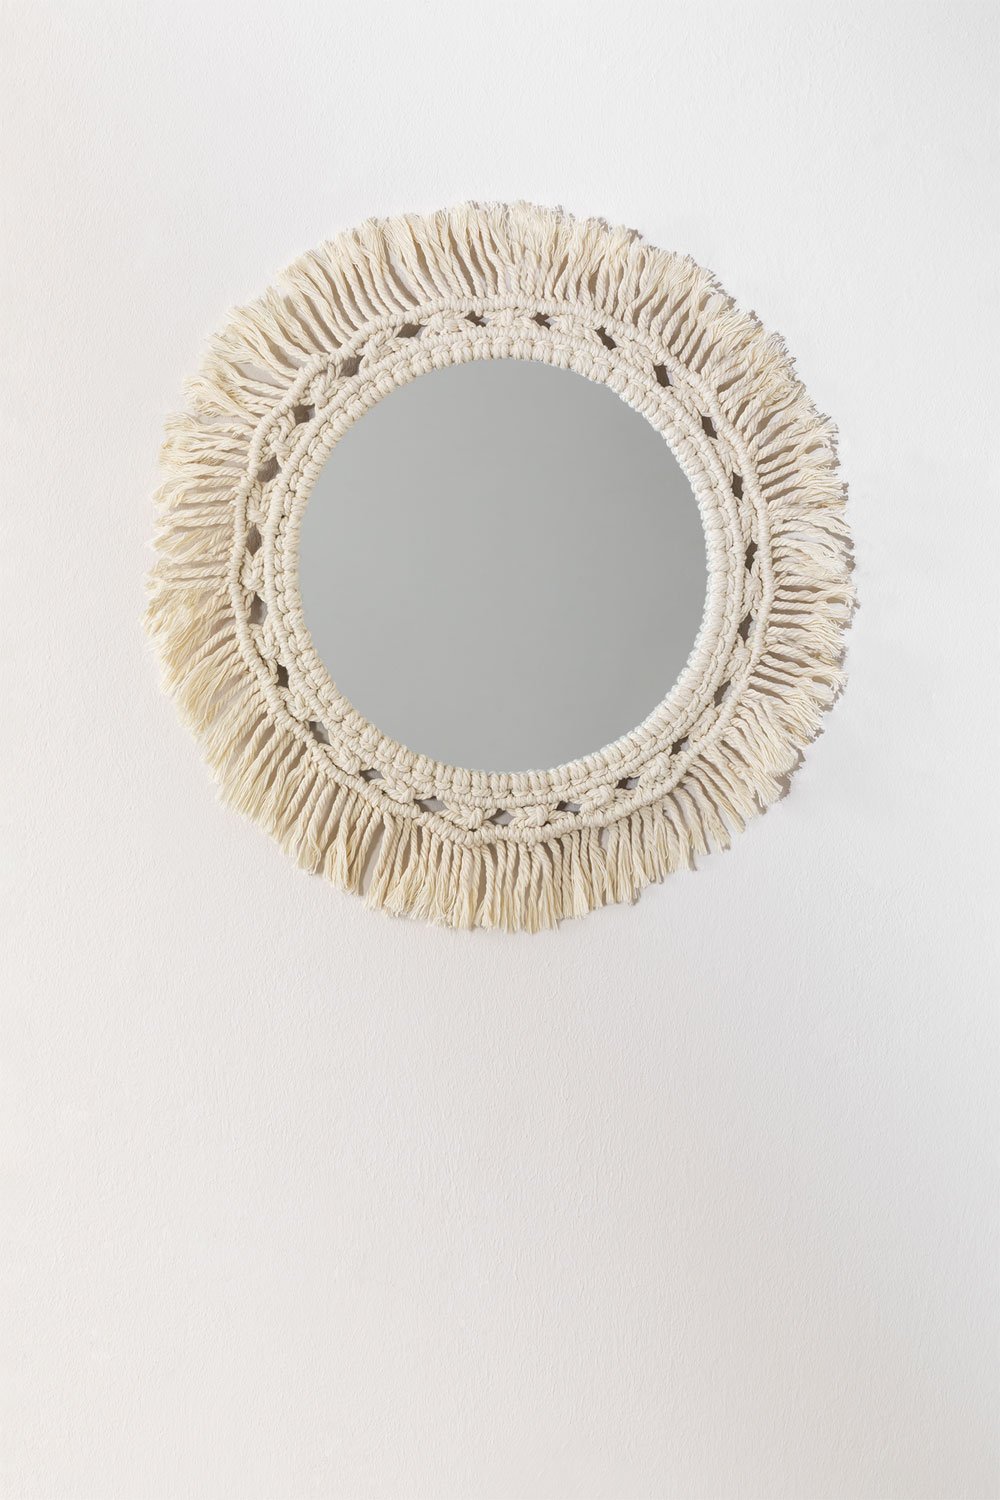 Specchio da parete rotondo in macramè (Ø46 cm) Antoin, immagine della galleria 1